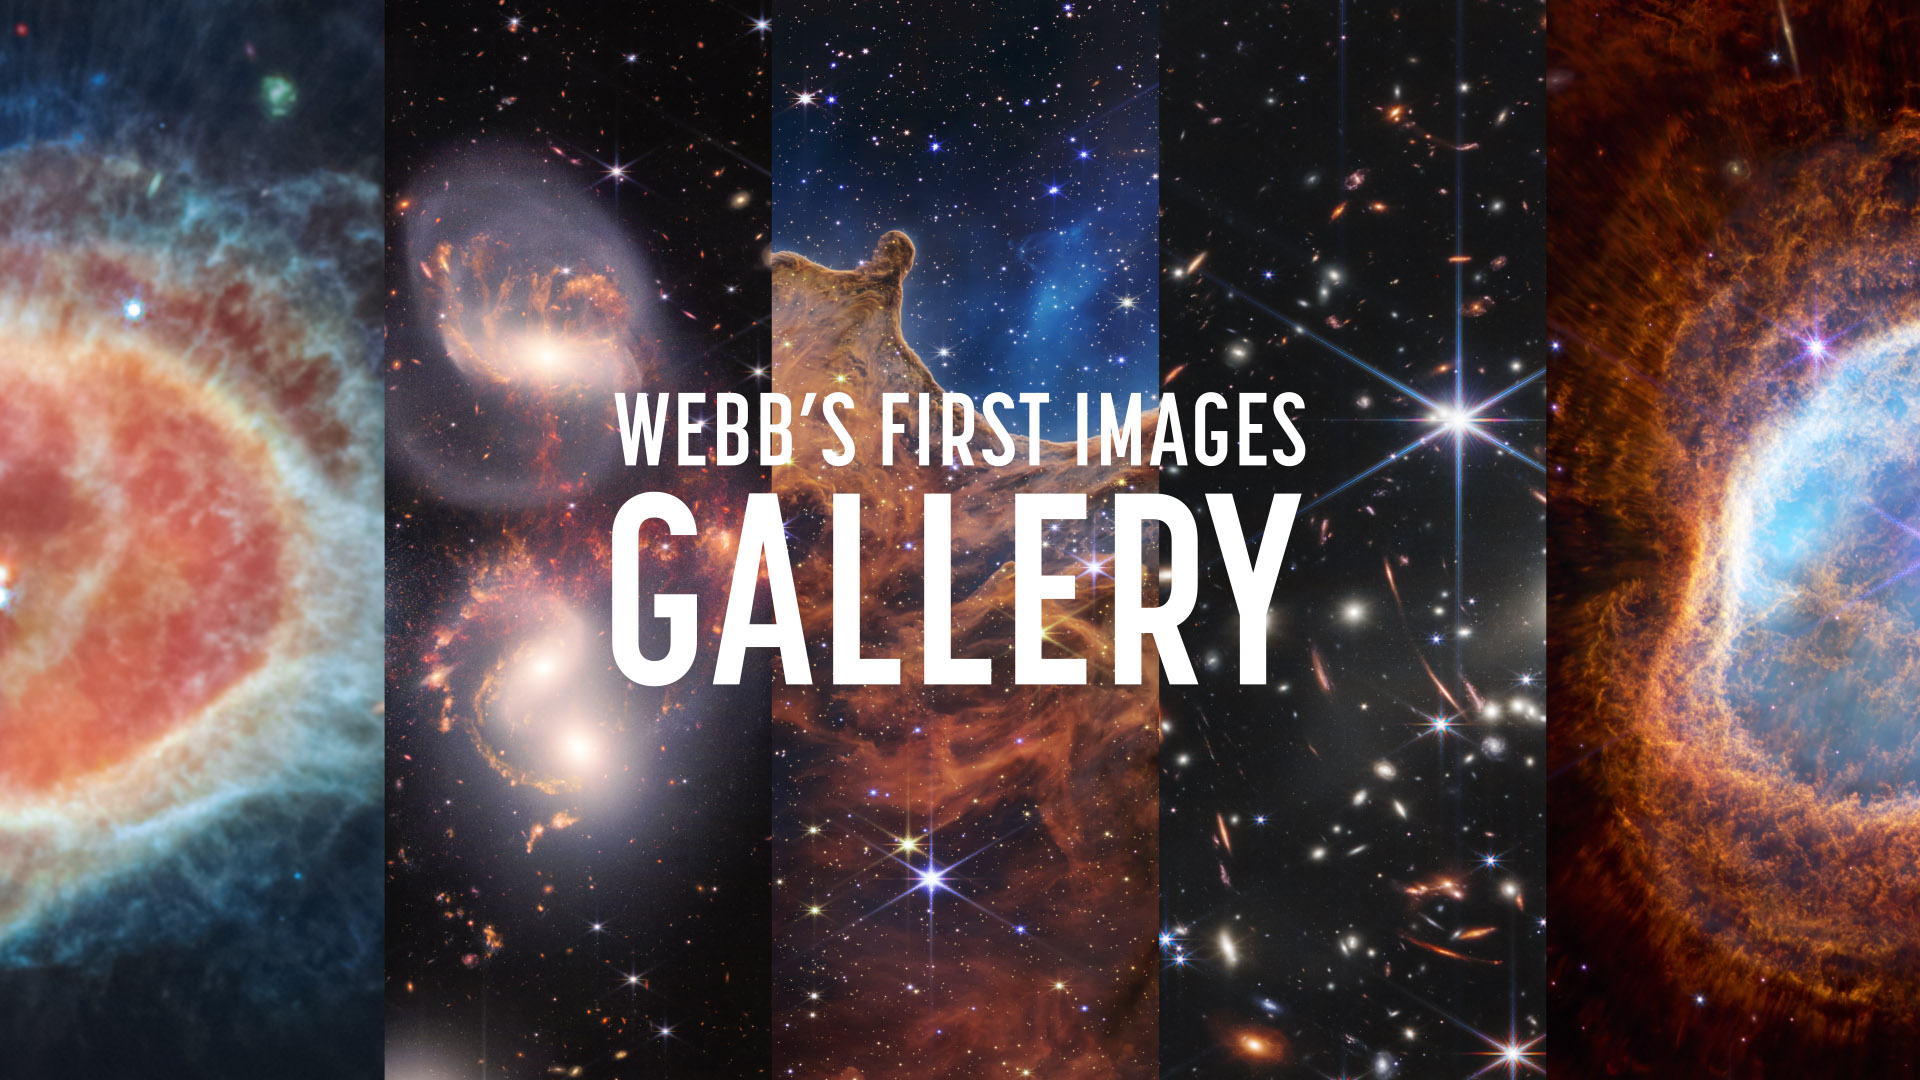 Profile James Webb Telescope Tv Channels